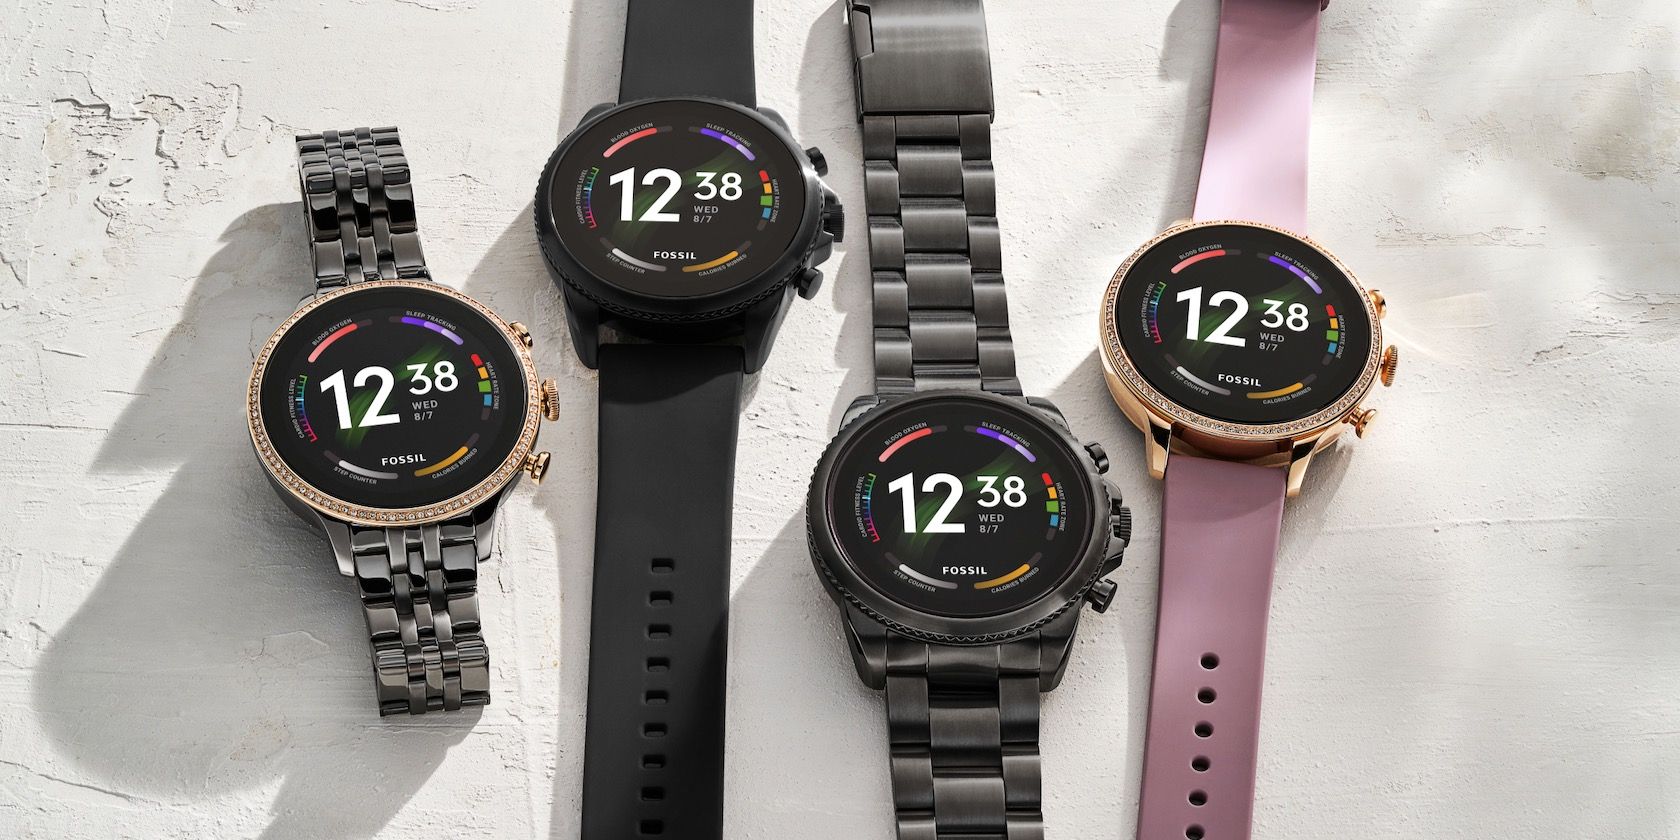 Gli ultimi smartwatch di Fossil non riceveranno l'aggiornamento Wear OS 3 fino al 2022